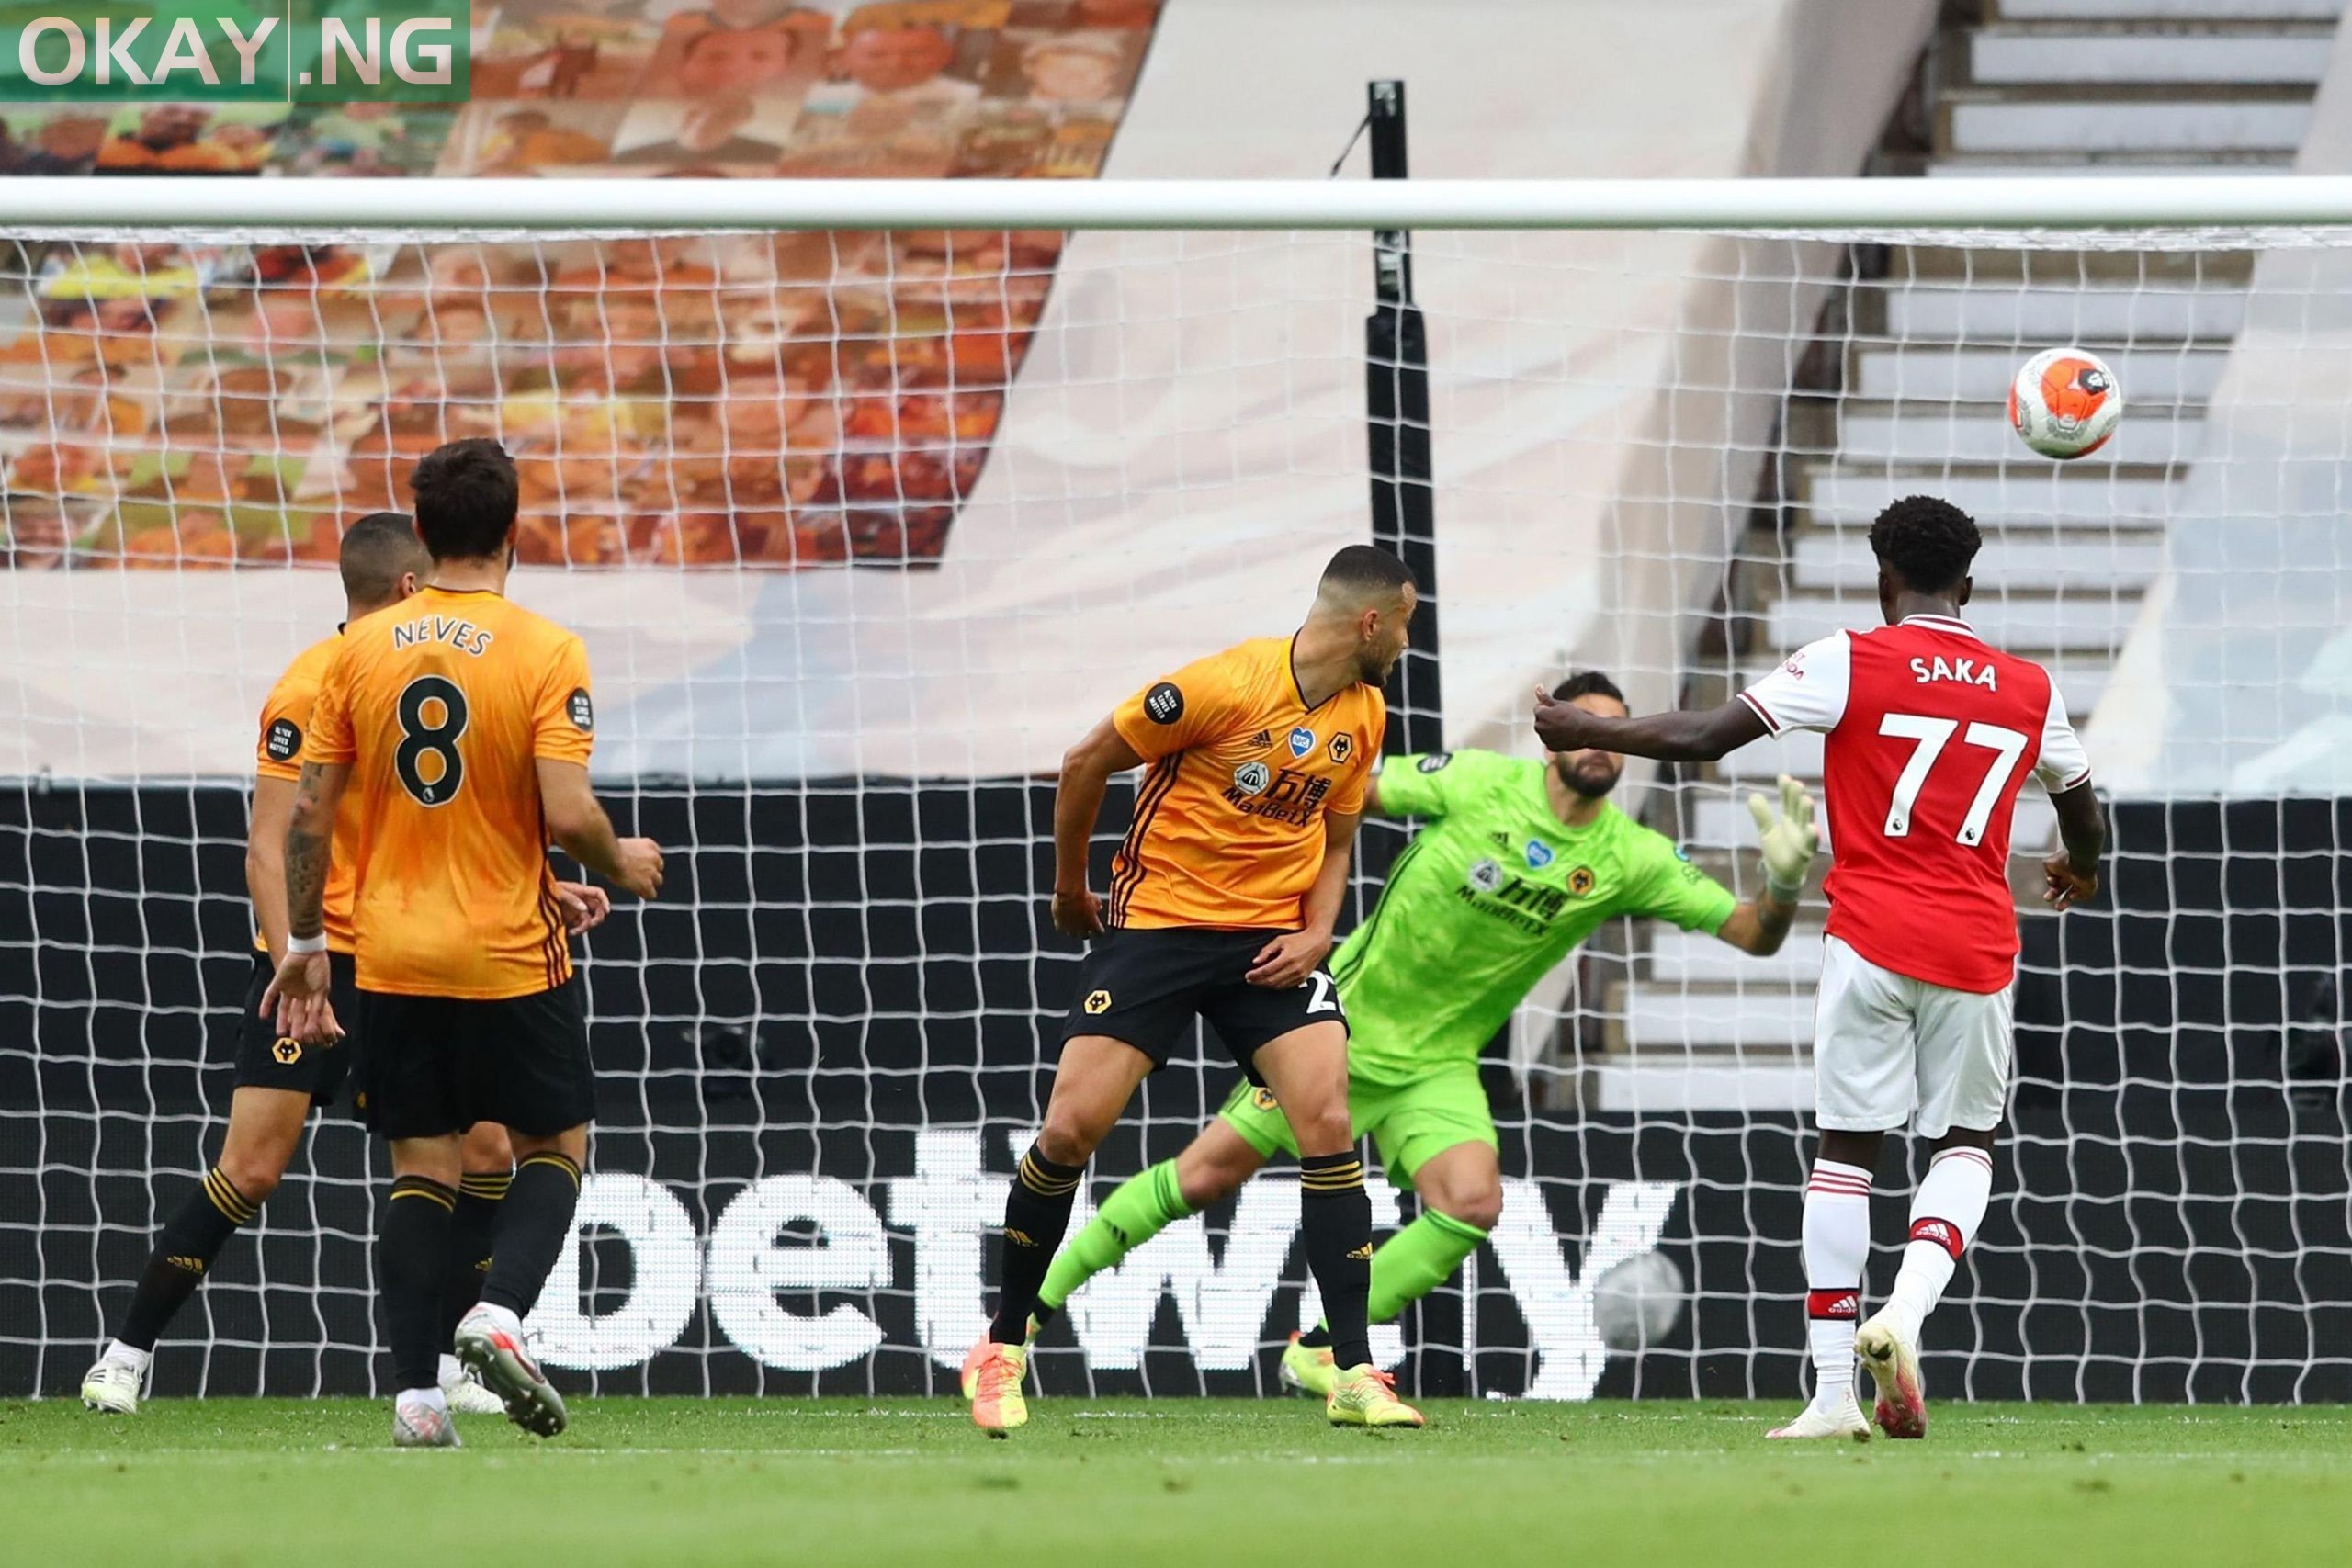 EPL: Saka shines as Arsenal defeat Wolves 2-0